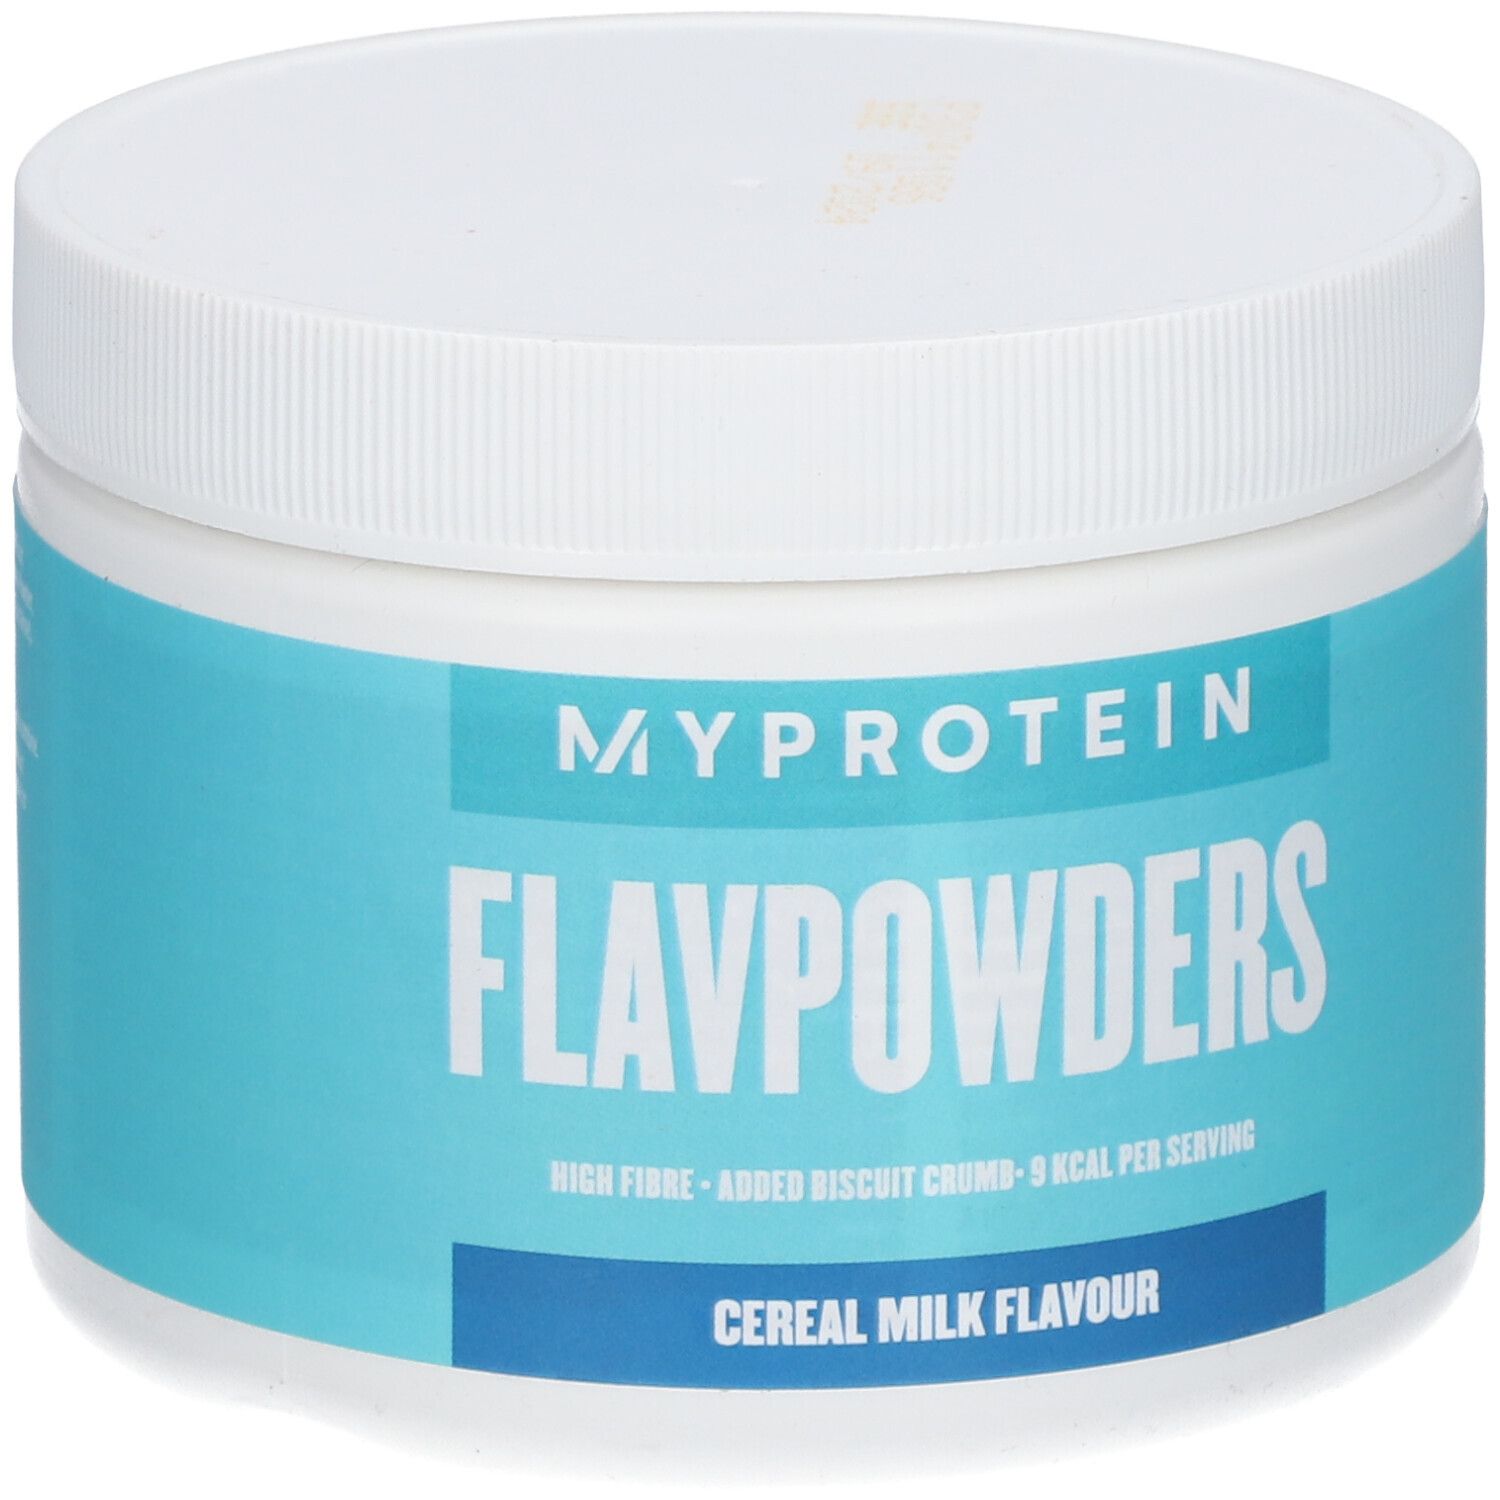 MyProtein FlavPowders Cereal Milk